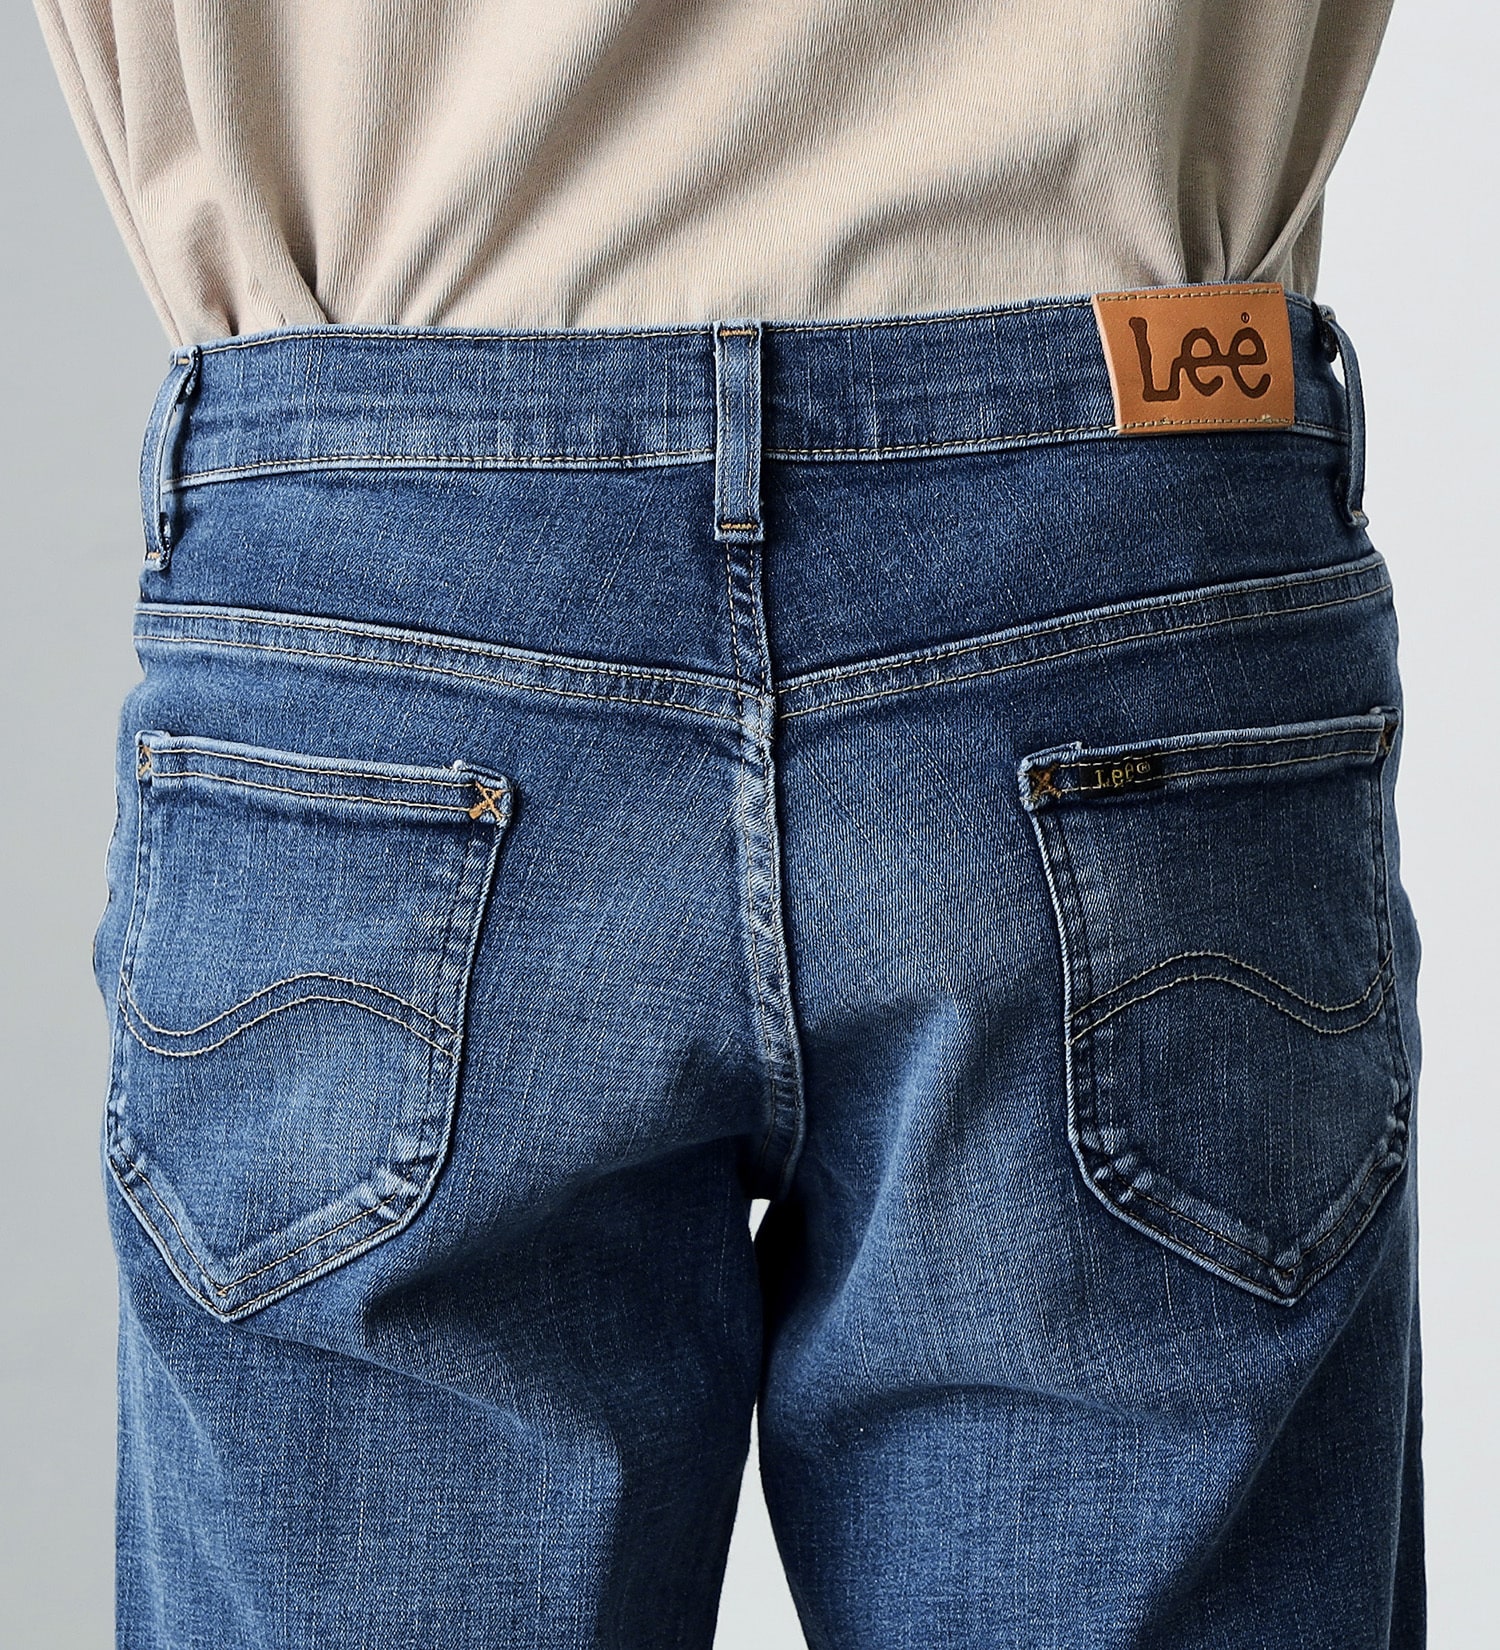 Lee(リー)の【超快適ストレッチ】キャロット スキニーパンツ|パンツ/デニムパンツ/メンズ|中色ブルー